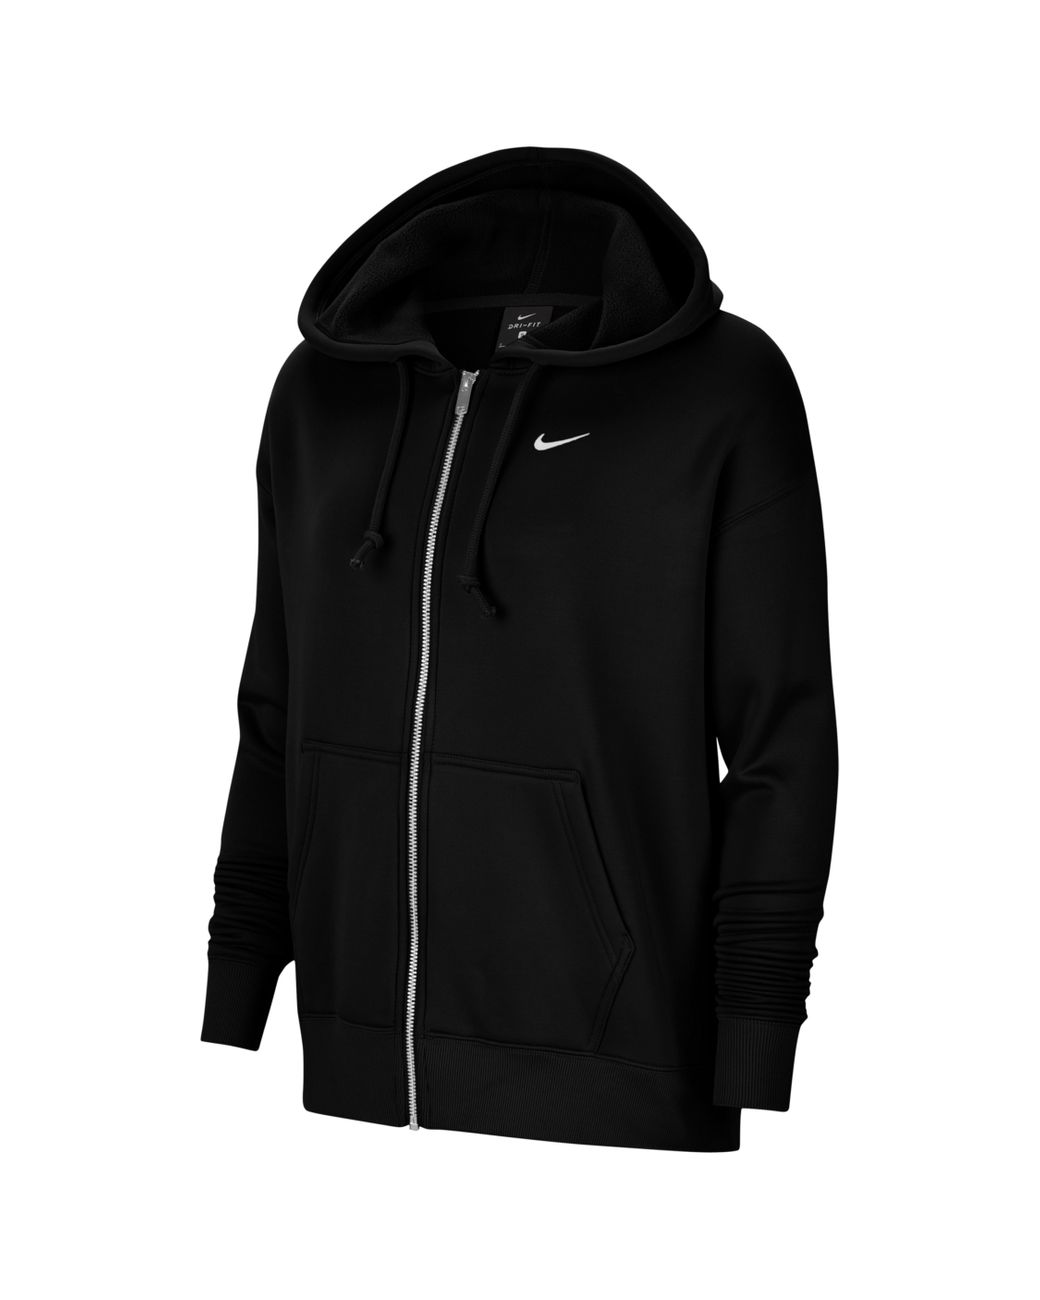 Nike Fleece Therma Fullzip Hoodie in Black/White (Black) - Lyst